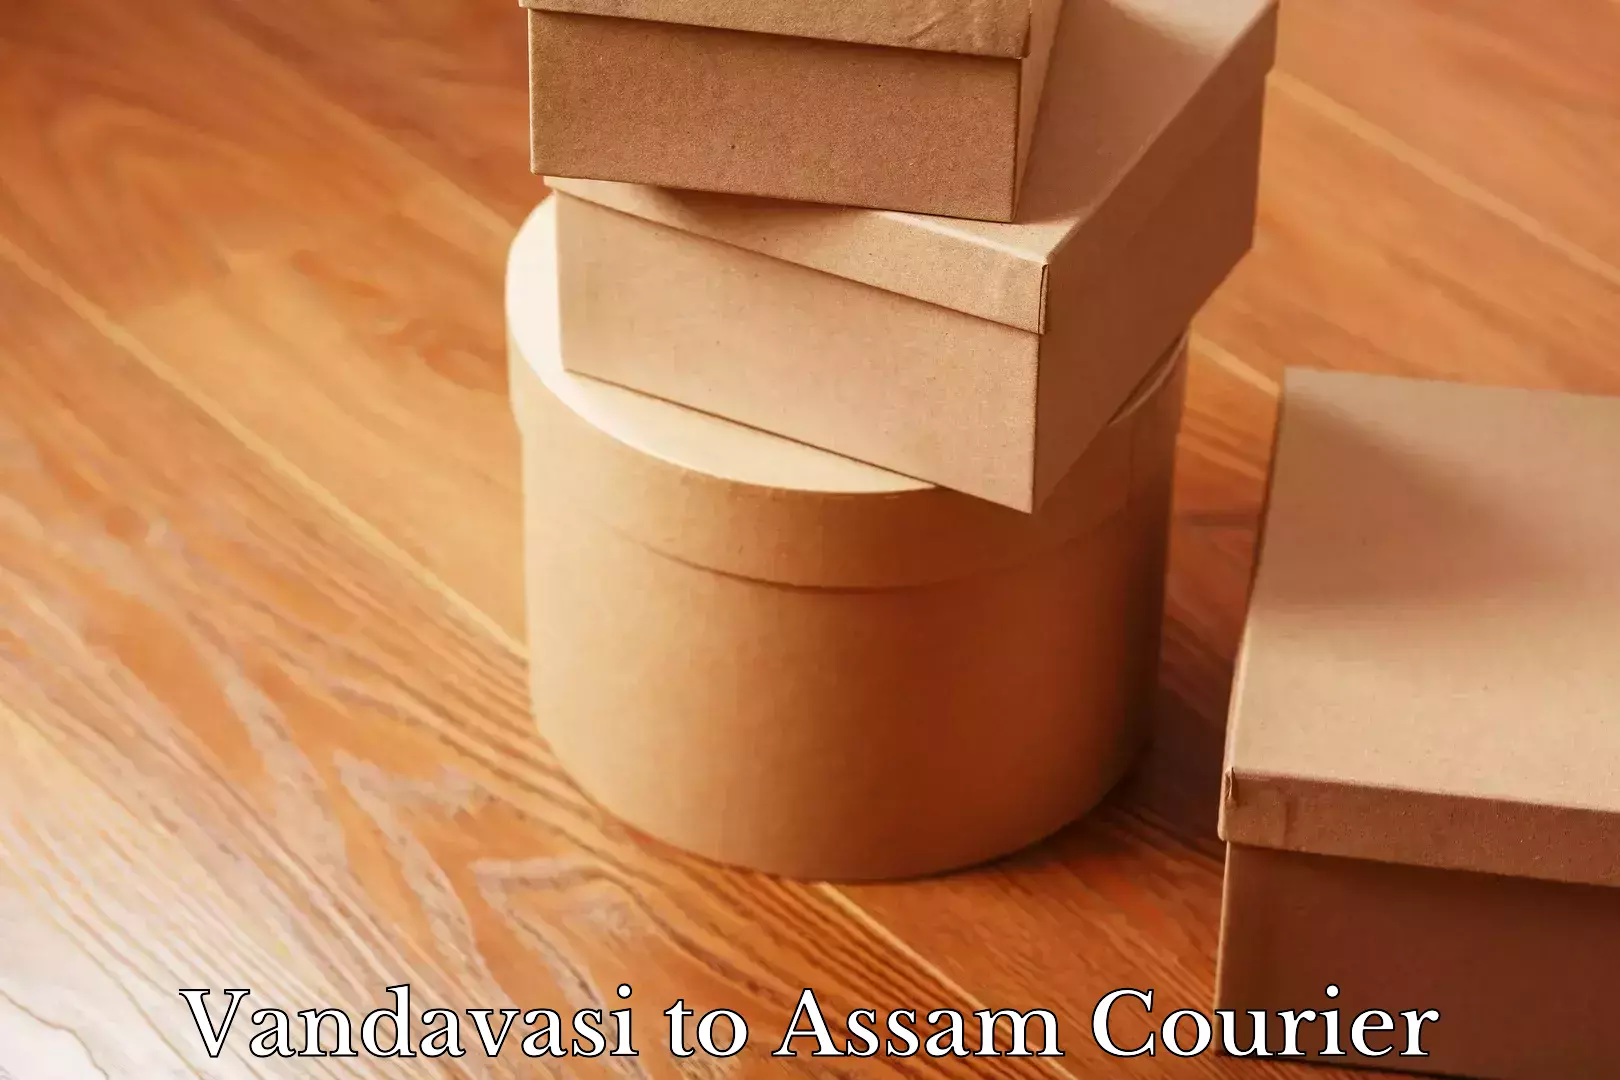 Ground shipping Vandavasi to Assam